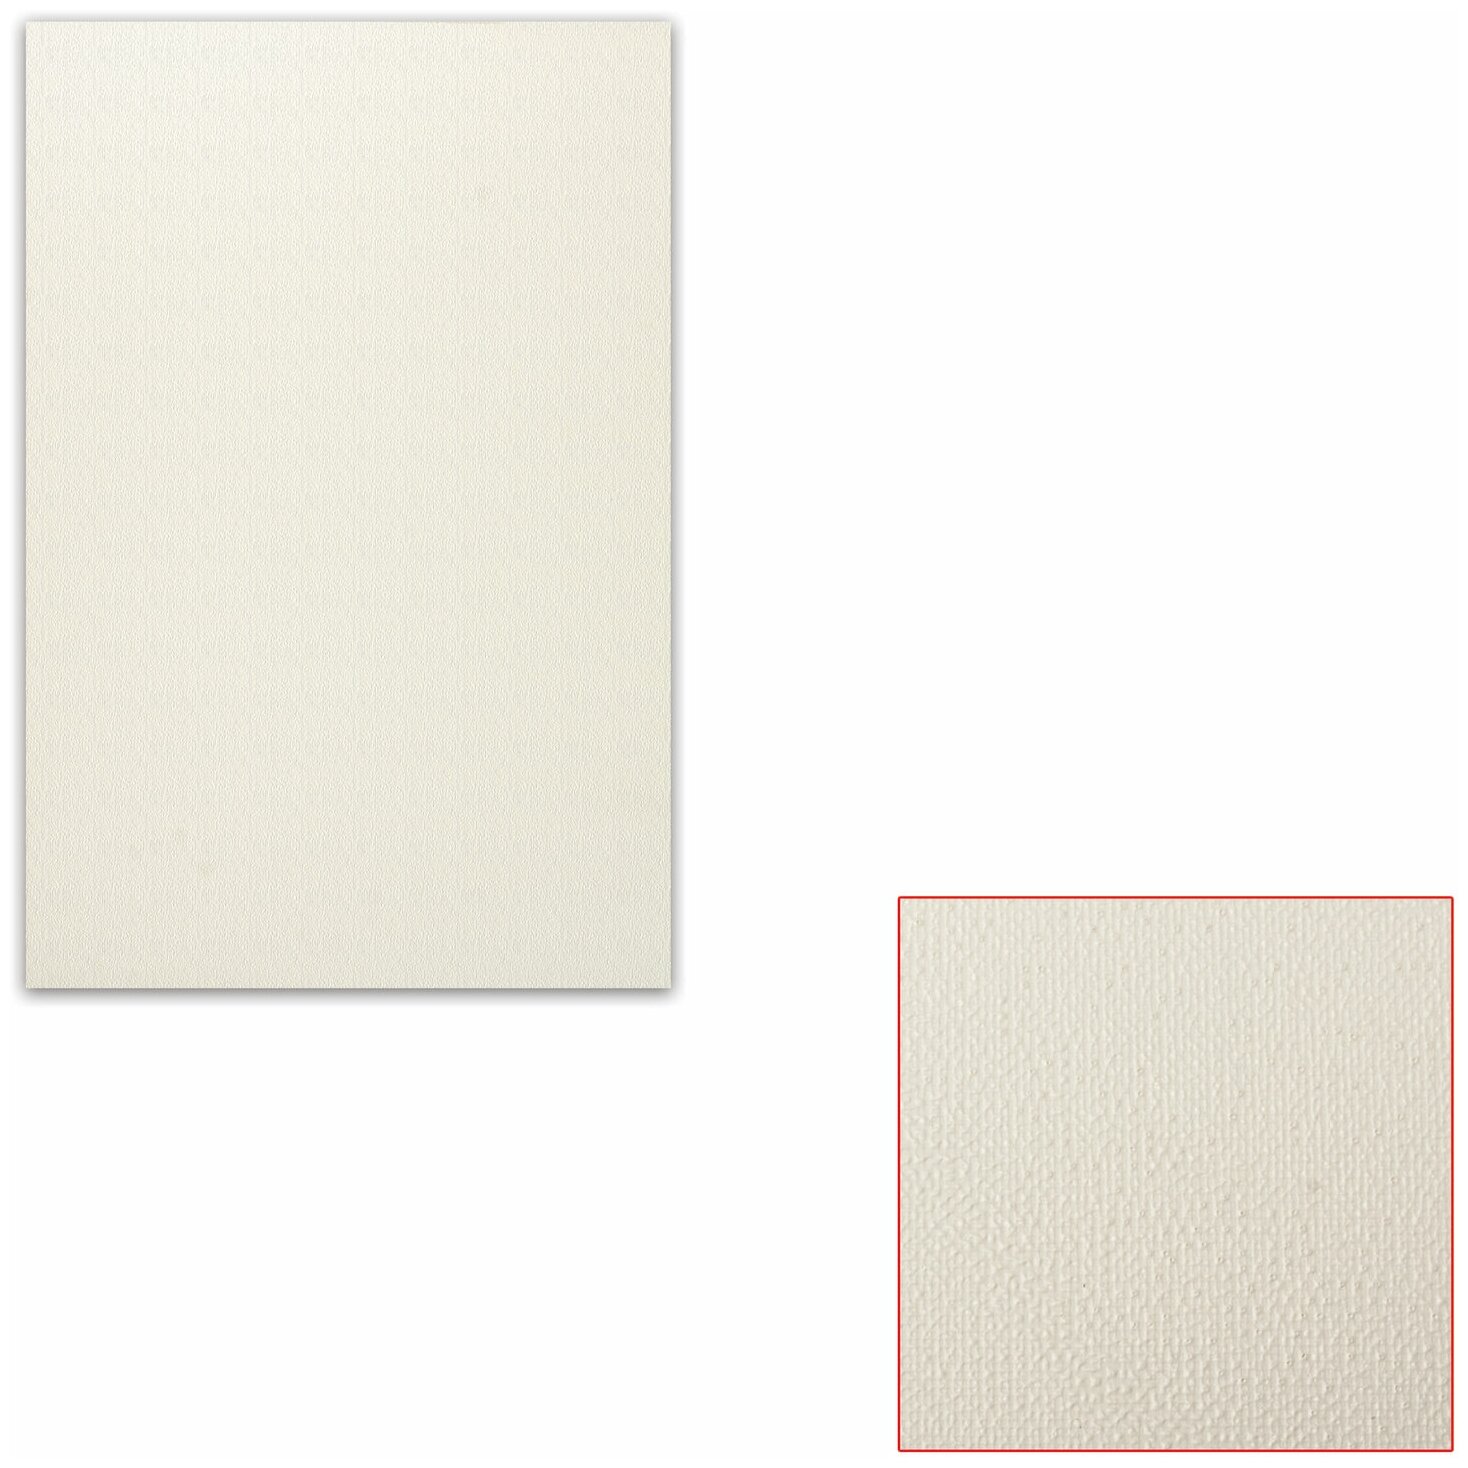 Картон белый грунтованный для масляной живописи, 20х30 см, односторонний, толщина 1,25 мм, масляный грунт В комплекте: 3шт.